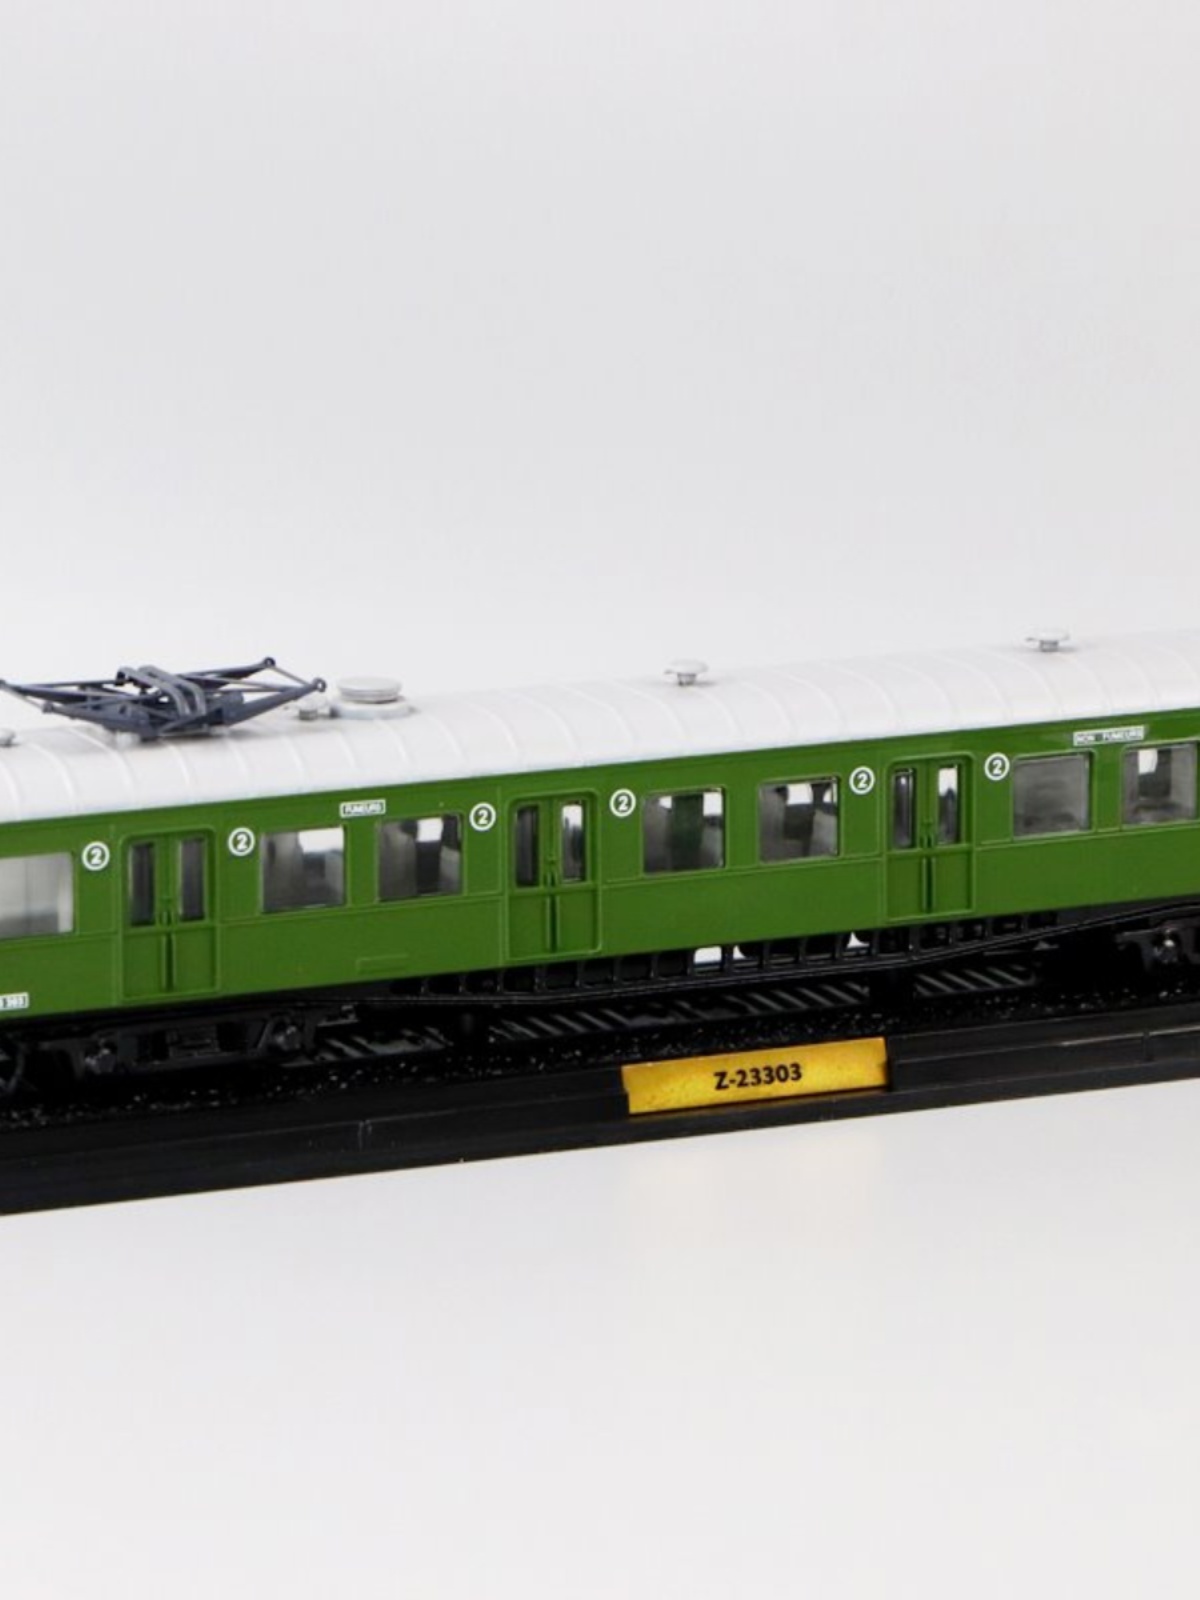 送礼 1/87 Z23303 1952年合金老式火车模型静态摆件收藏品